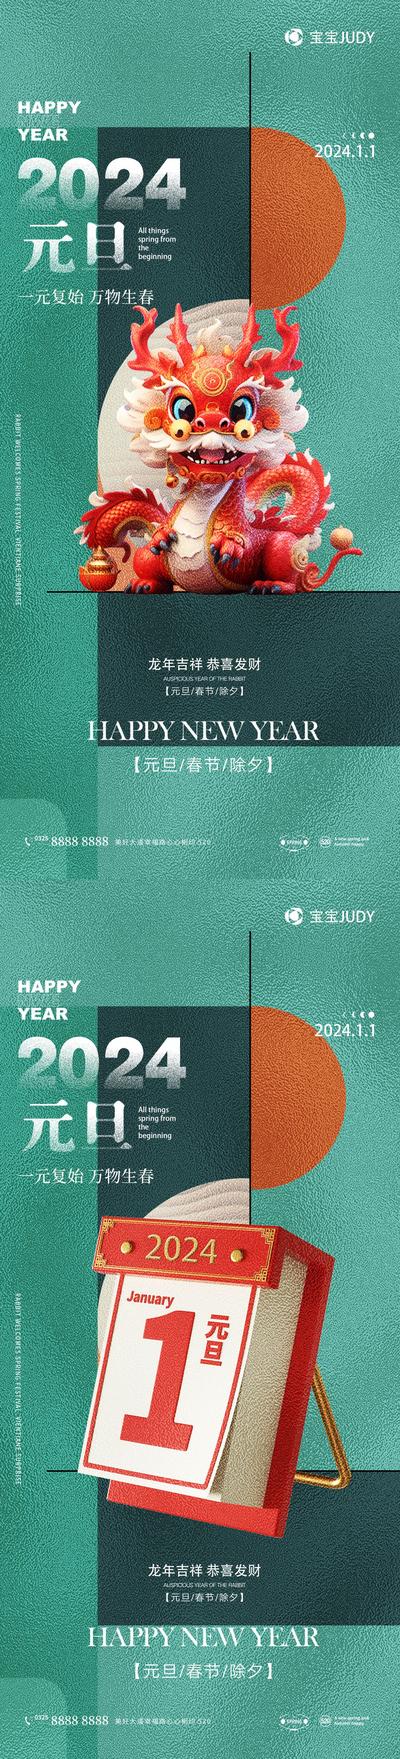 【南门网】广告 海报 节日 元旦 日历 茶壶 系列 龙年 2024